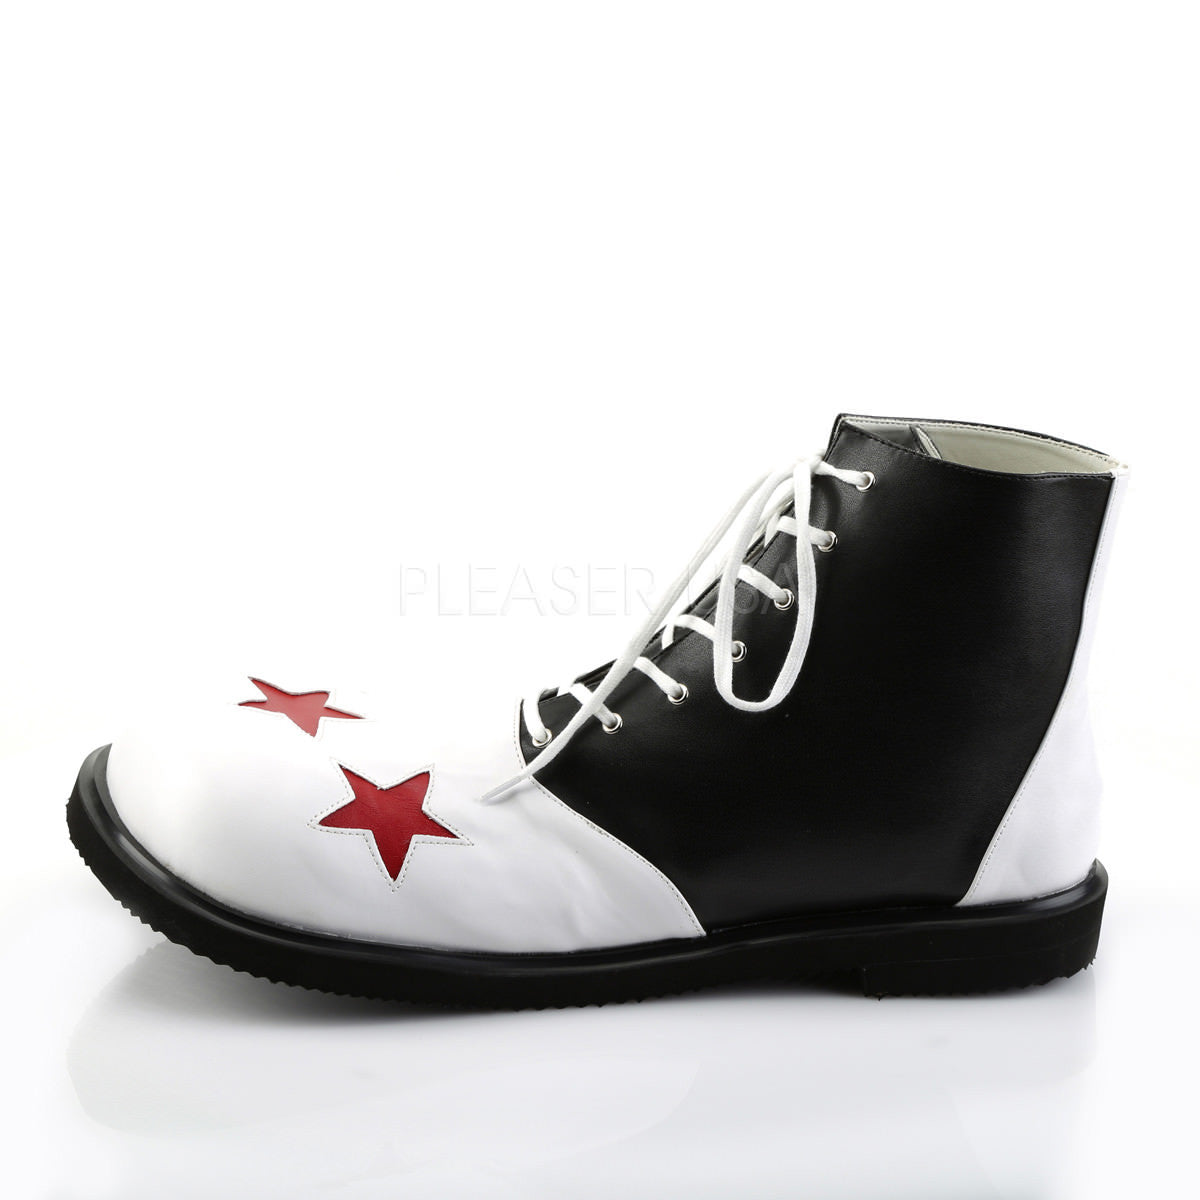 FUNTASMA CLOWN-02 Black-White Pu Clown Shoes